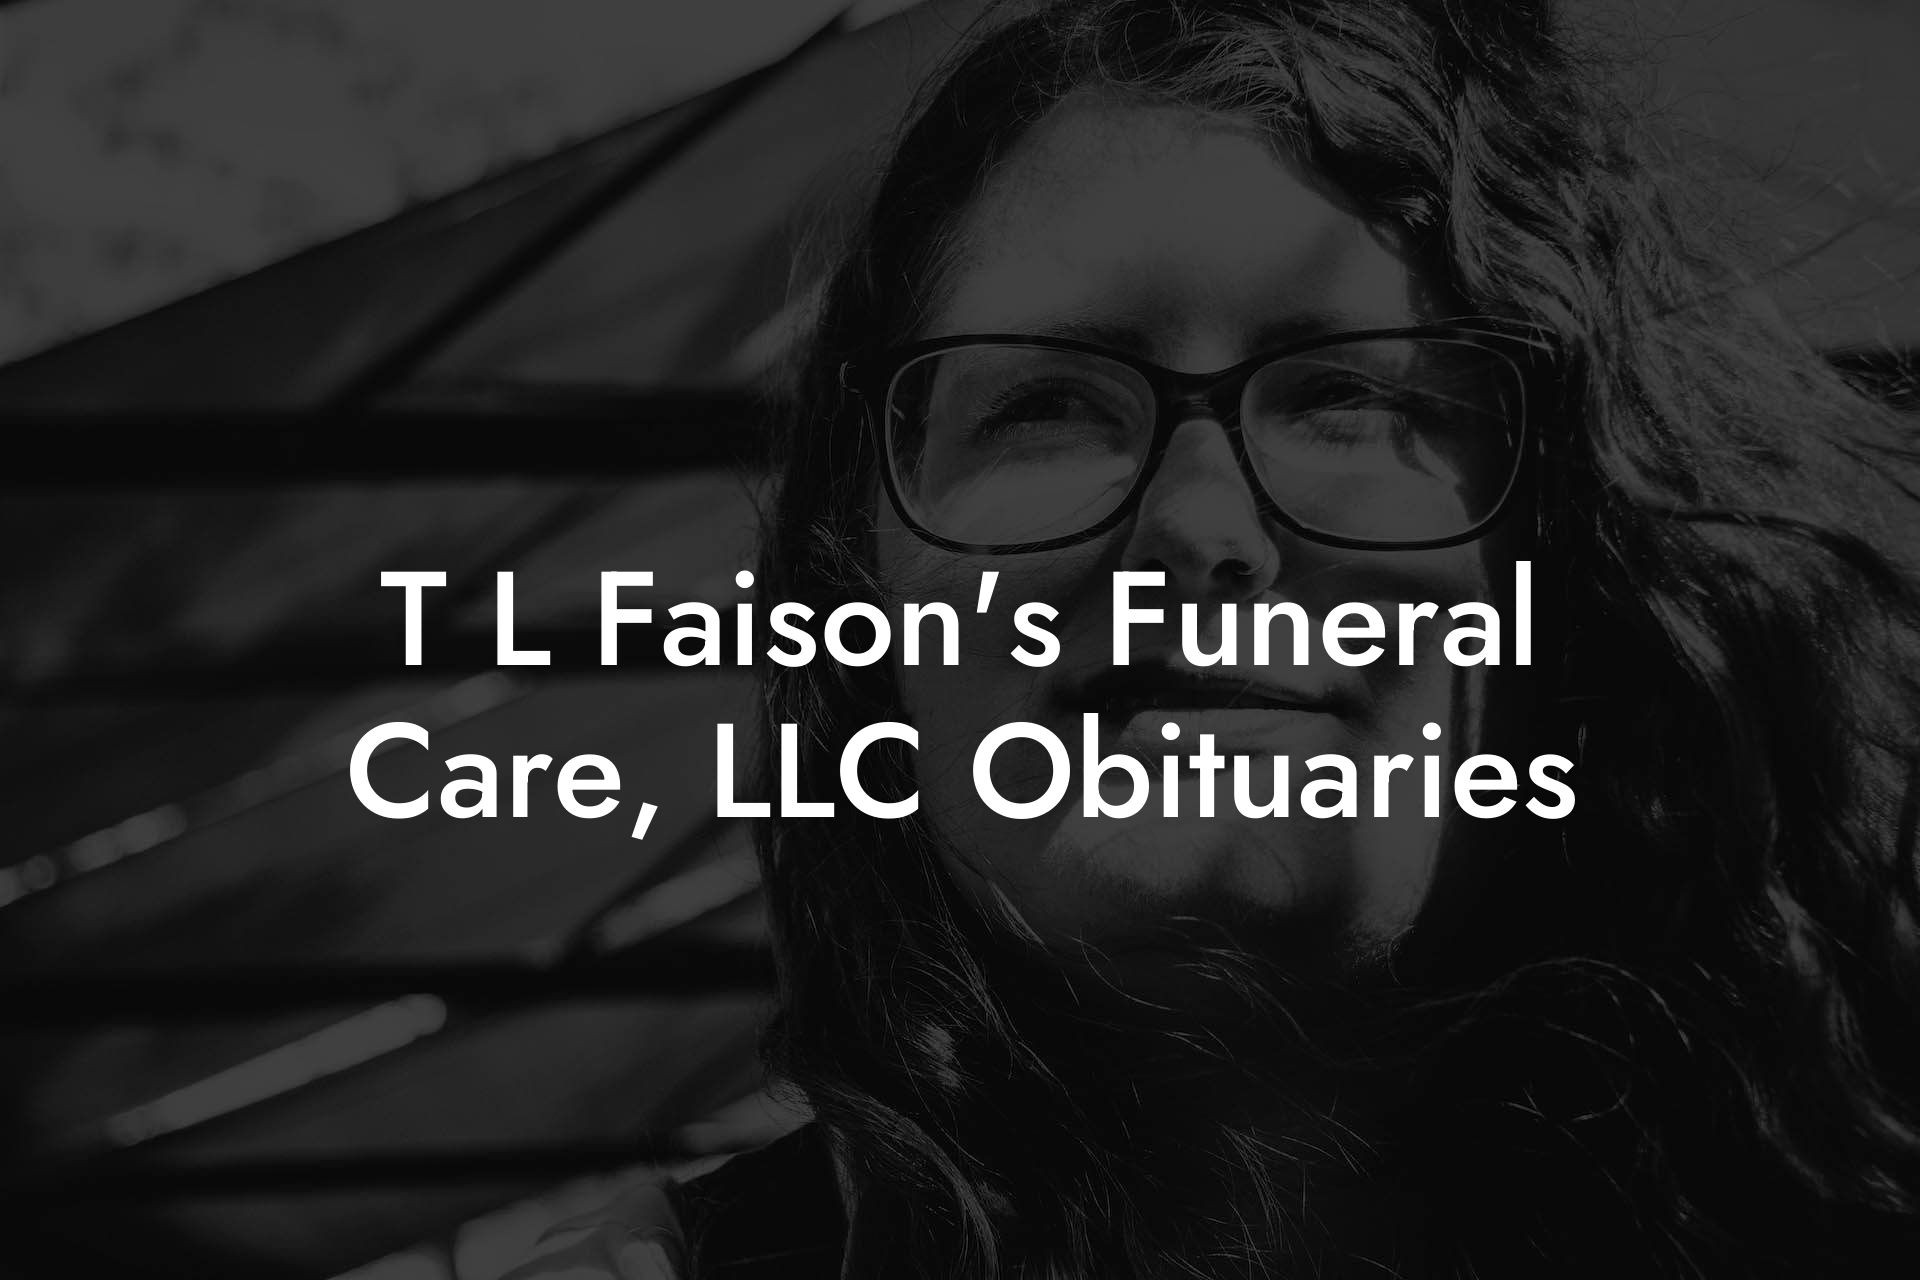 T L Faison's Funeral Care, LLC Obituaries